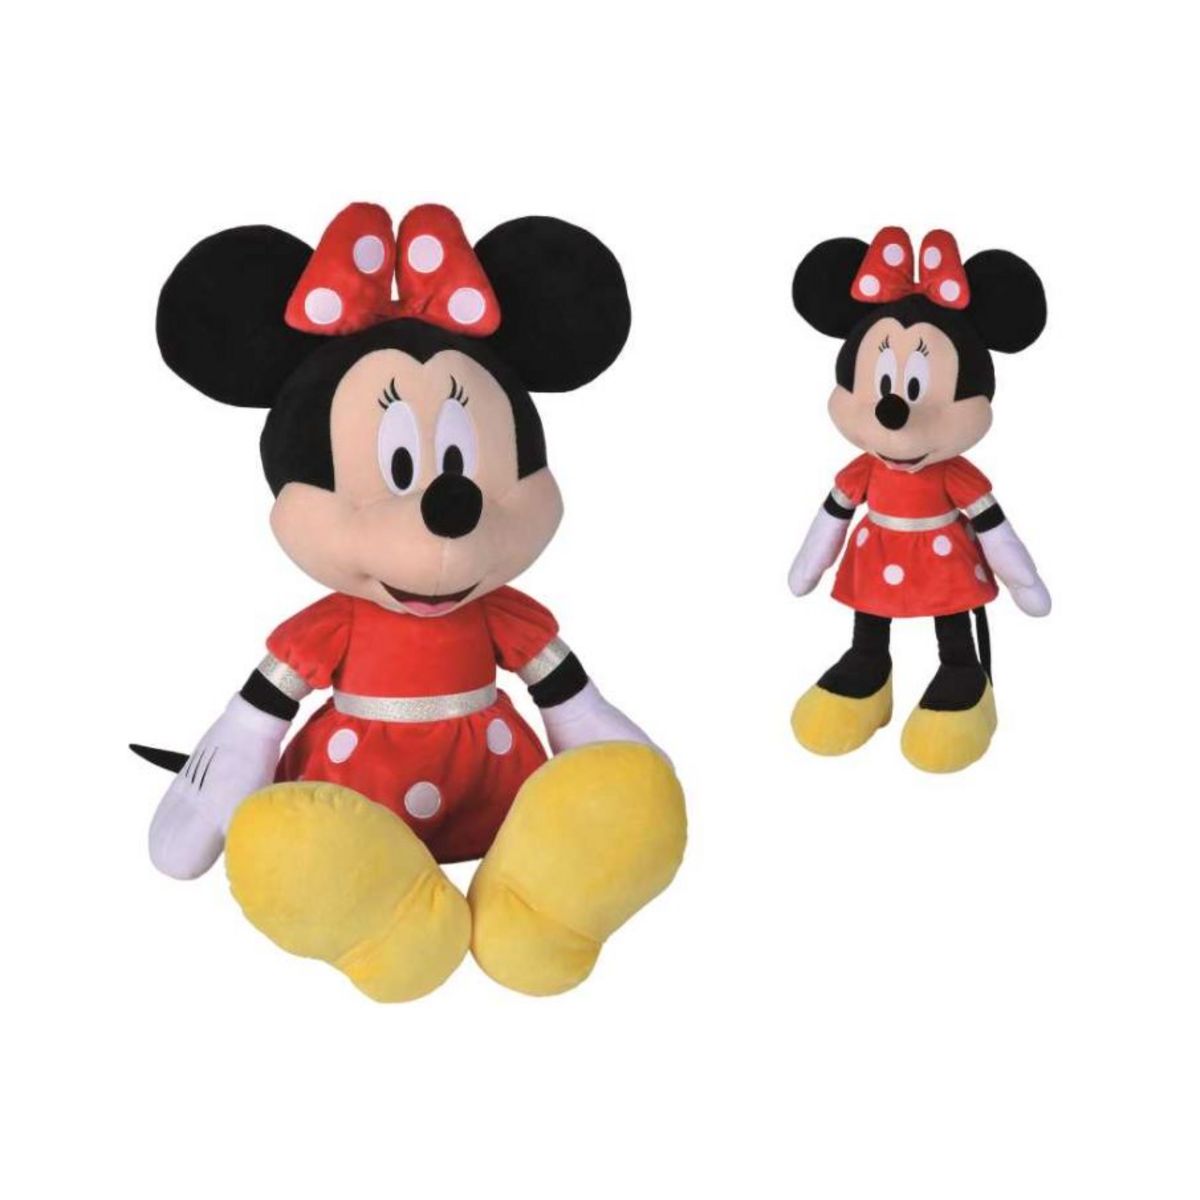 SIMBA Peluche Disney - Minnie Mouse en robe rouge 60 cm pas cher - Auchan.fr